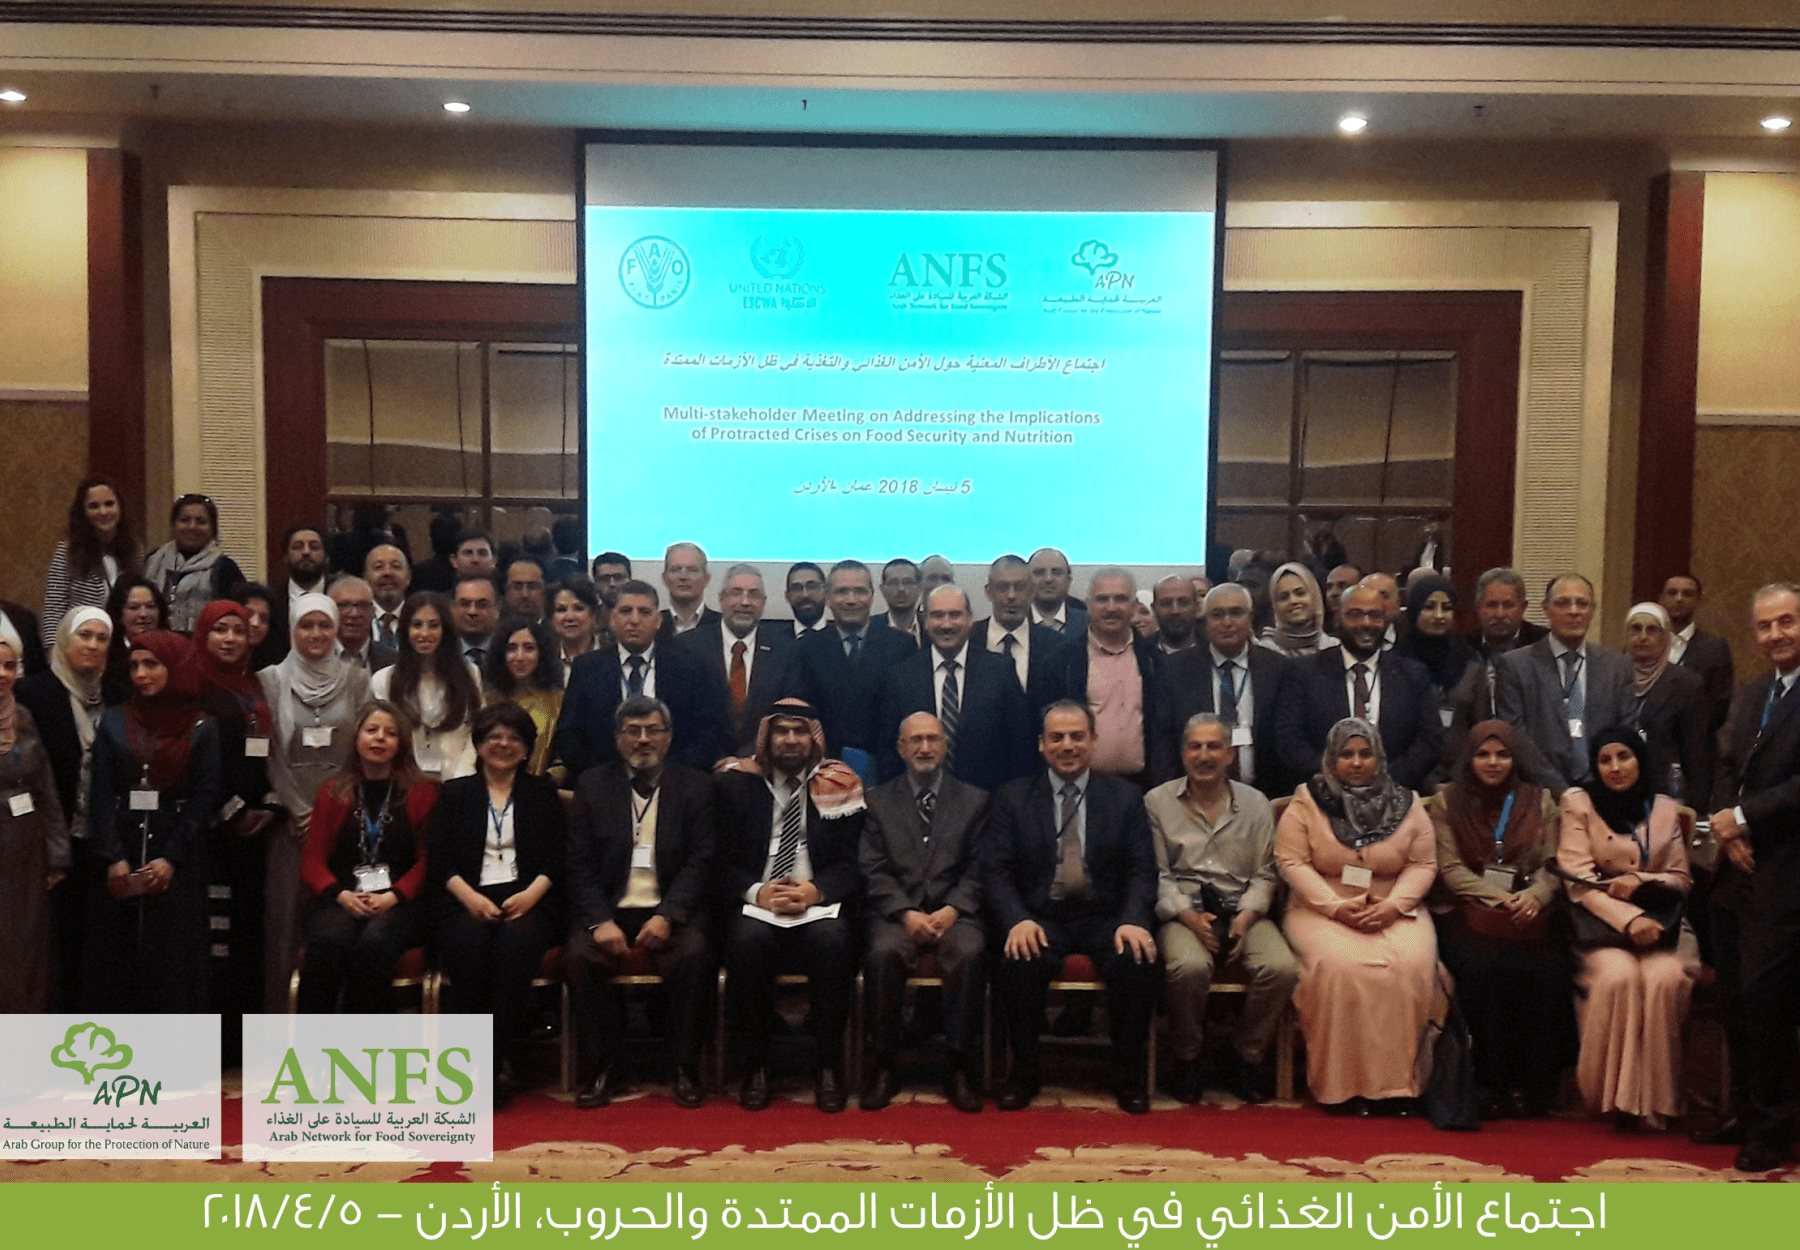 العربية والشبكة تنظمان مؤتمراً وطنياً ملحاً في الأردن حول الأمن الغذائي ظل الأزمات والحروب بحضور 70 خبير